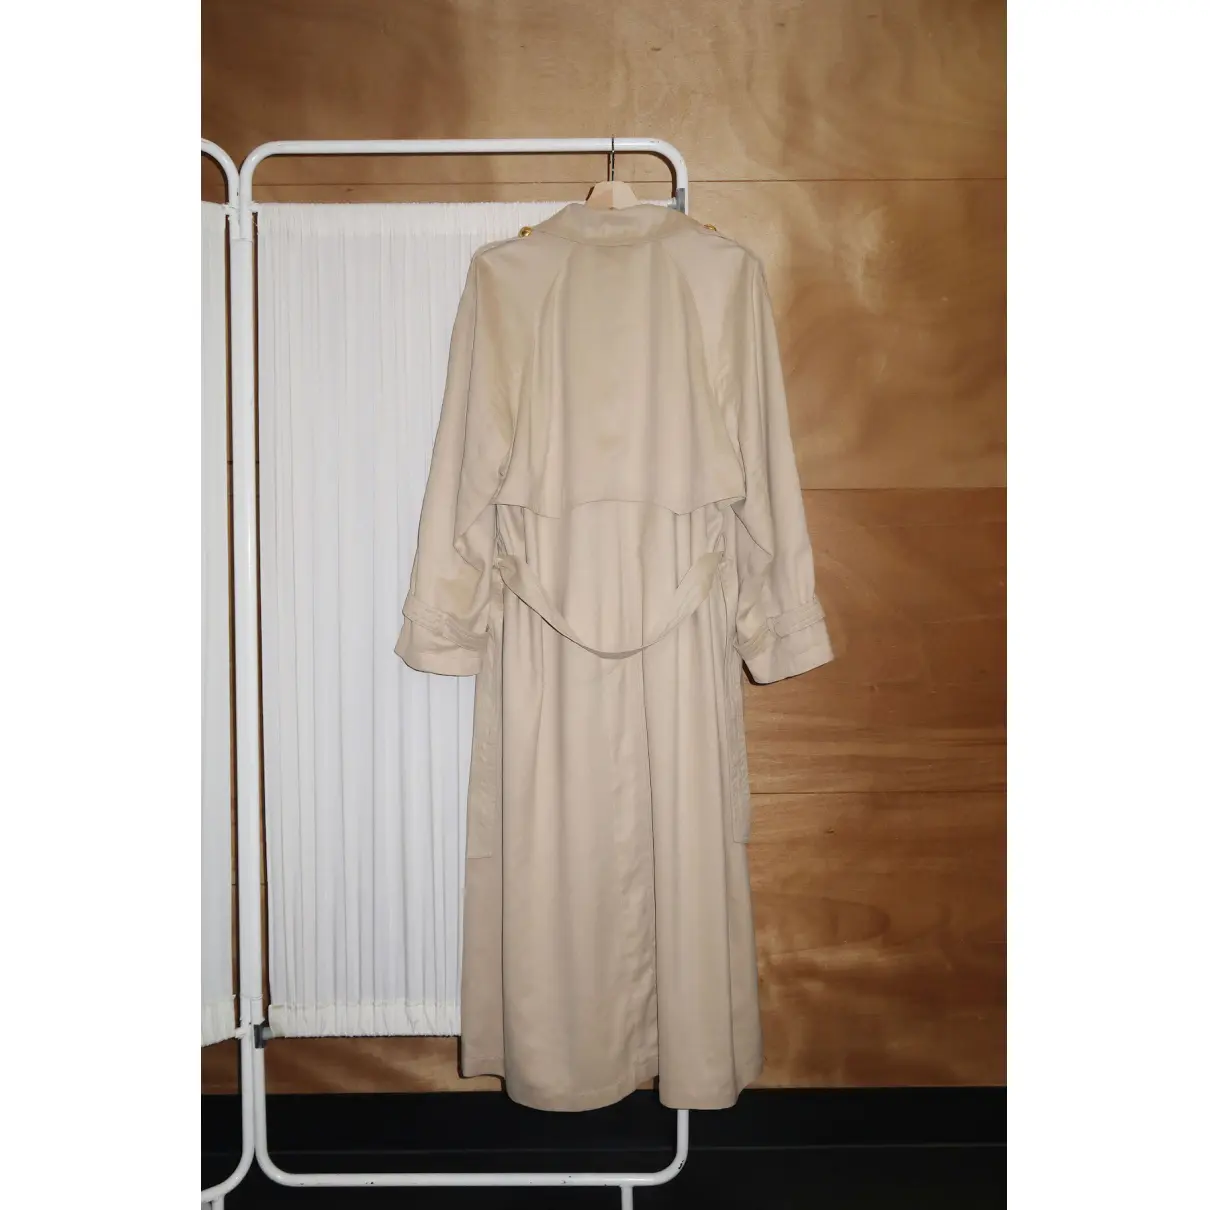 Buy Gianfranco Ferré Trench coat online - Vintage